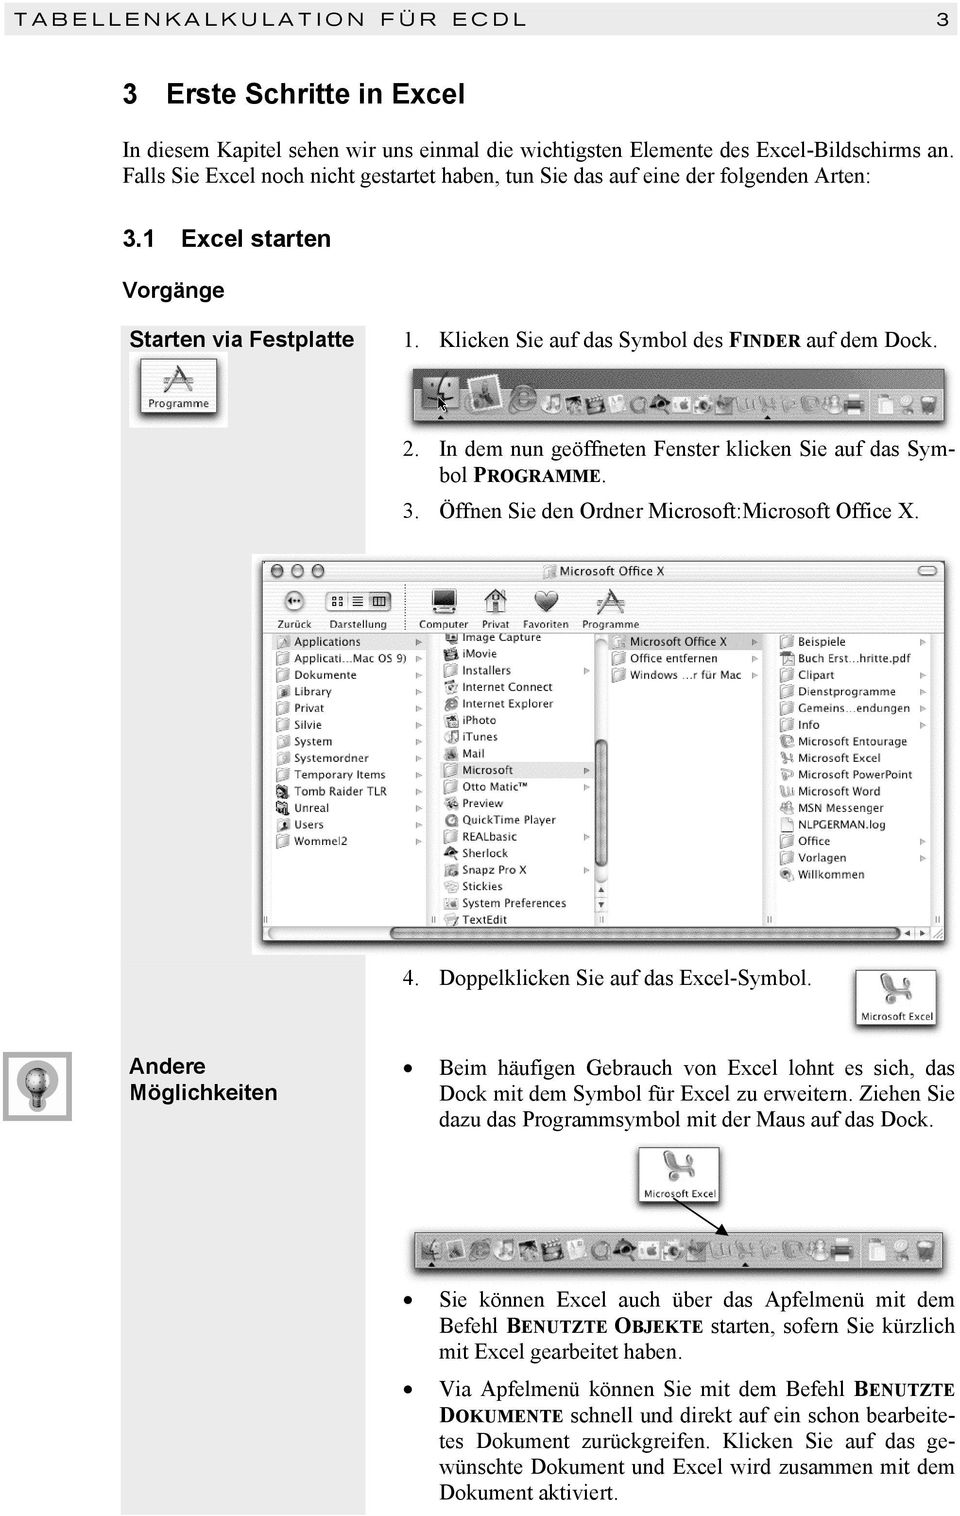 In dem nun geöffneten Fenster klicken Sie auf das Symbol PROGRAMME. 3. Öffnen Sie den Ordner Microsoft:Microsoft Office X. 4. Doppelklicken Sie auf das Excel-Symbol.